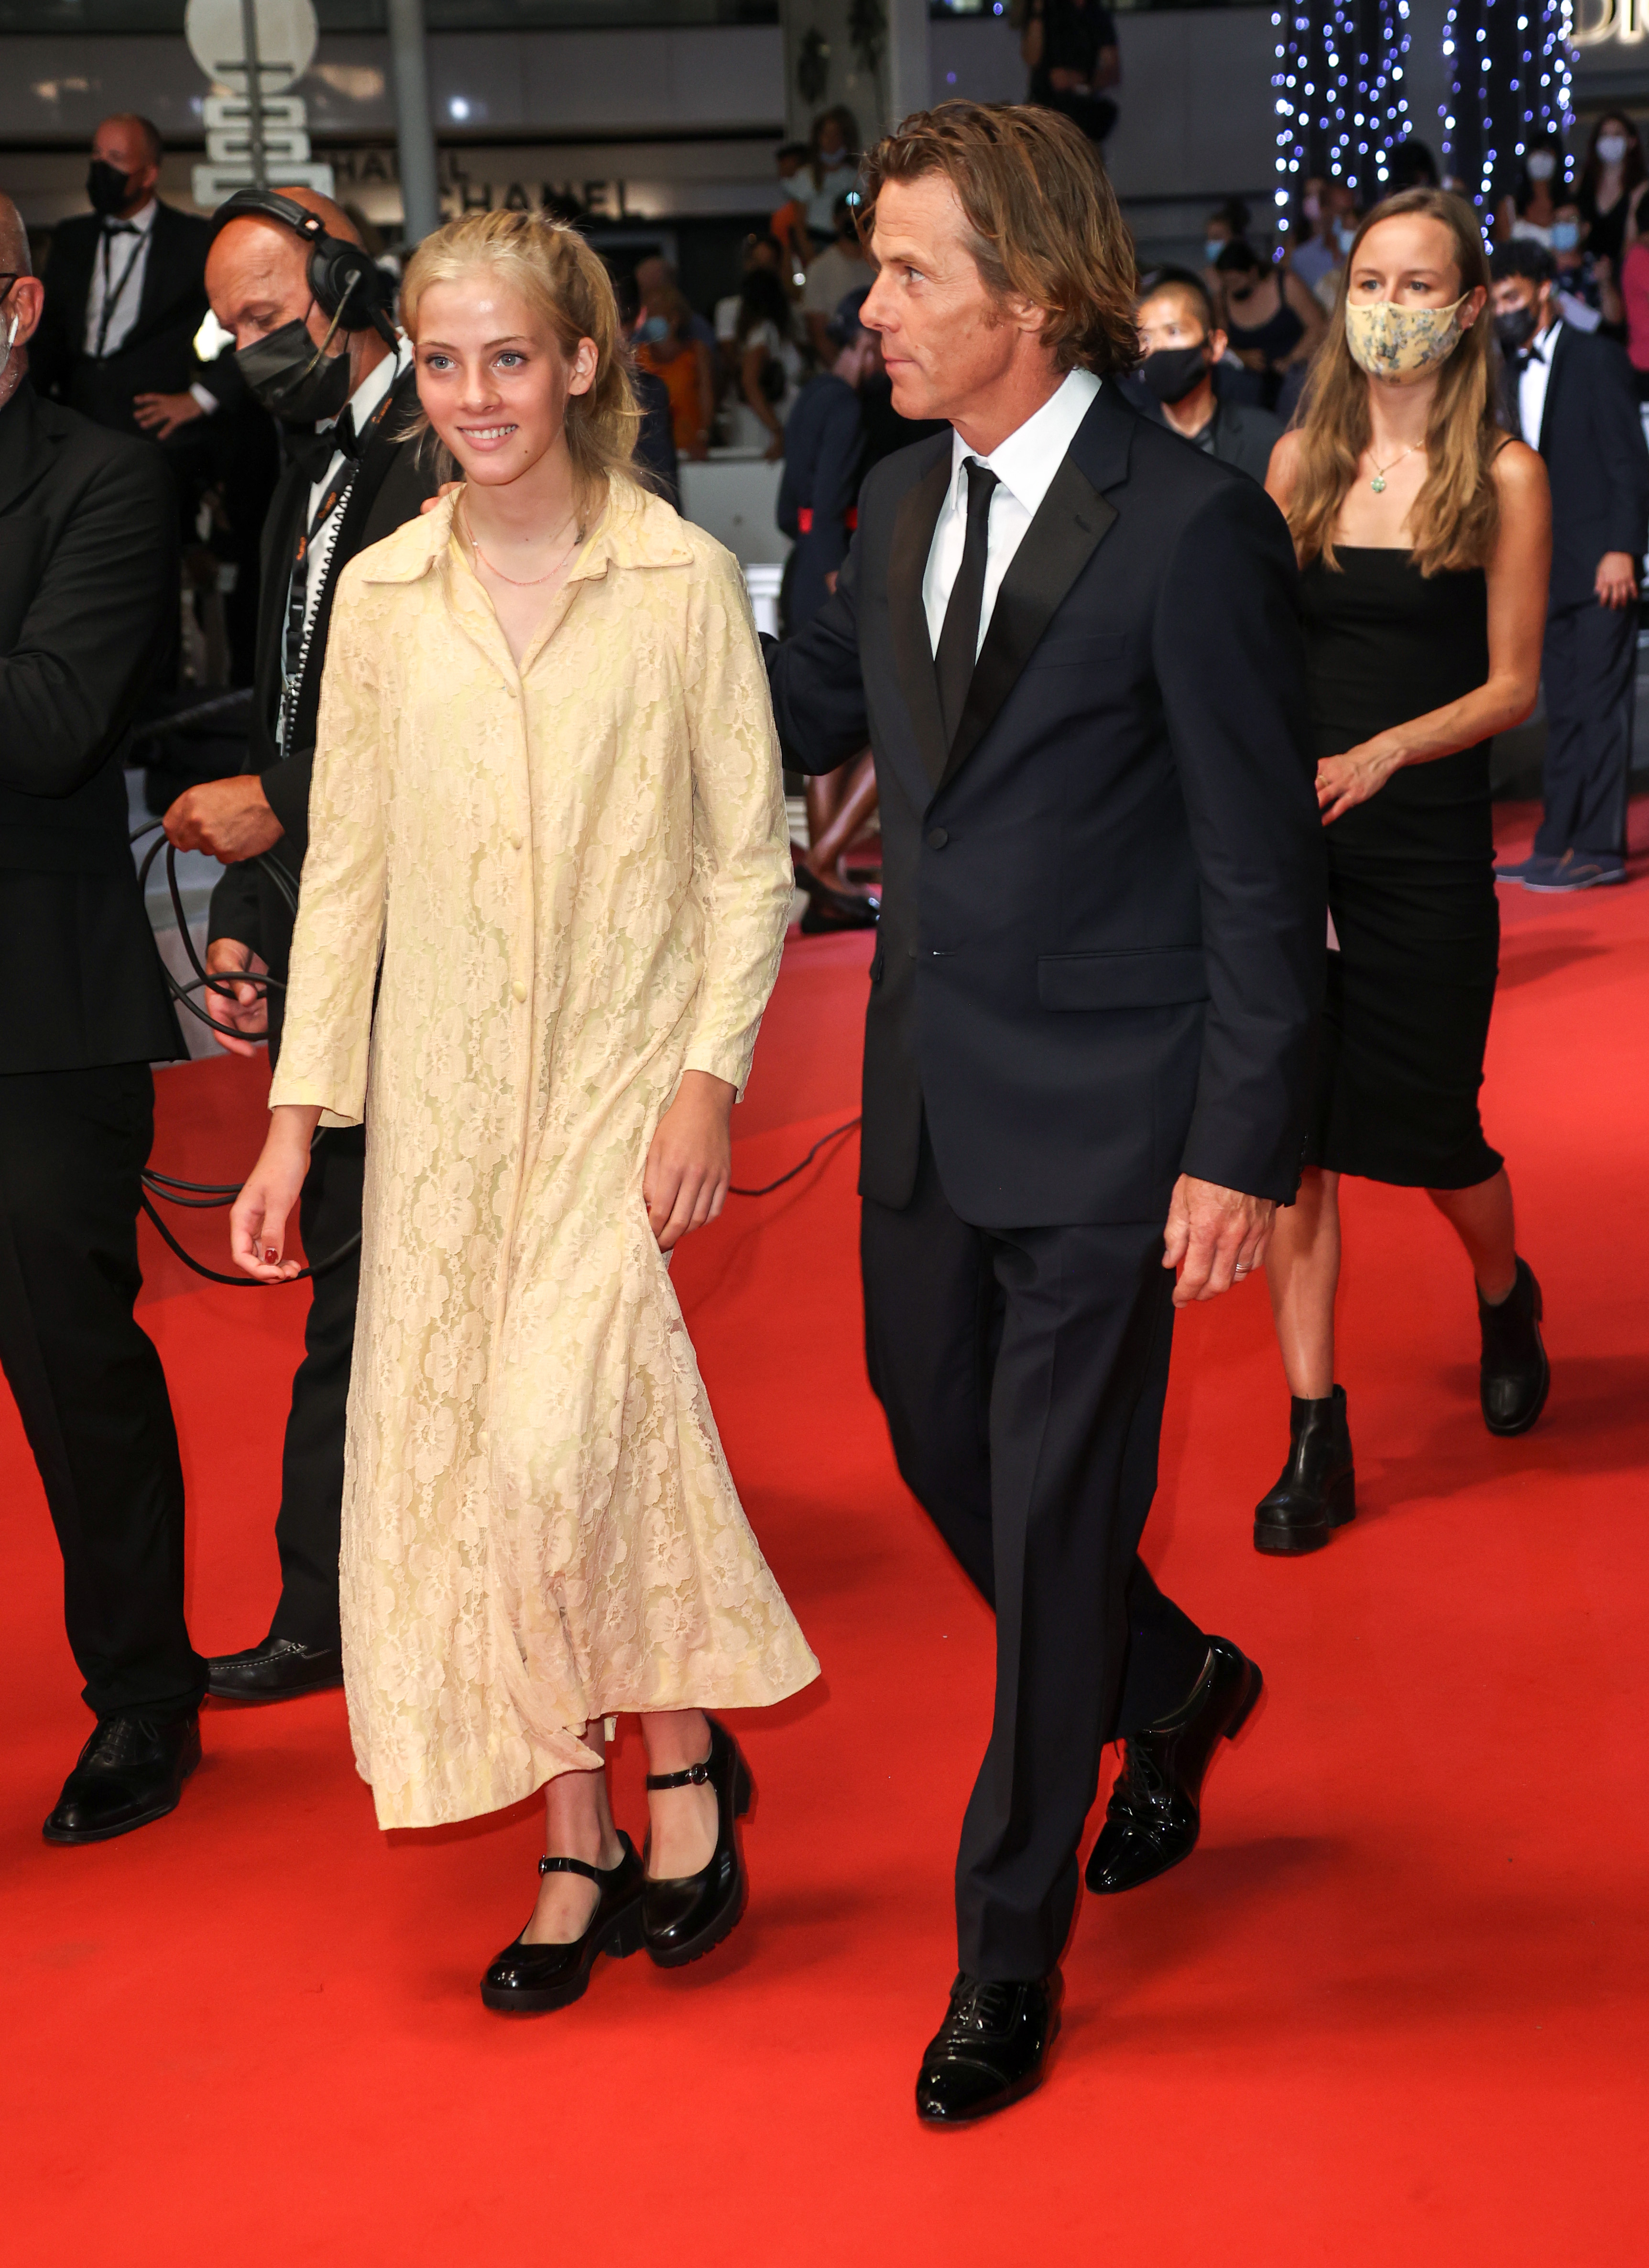 Hazel und Daniel Moder bei den 74. jährlichen Filmfestspielen von Cannes am 10. Juli 2021 | Quelle: Getty Images